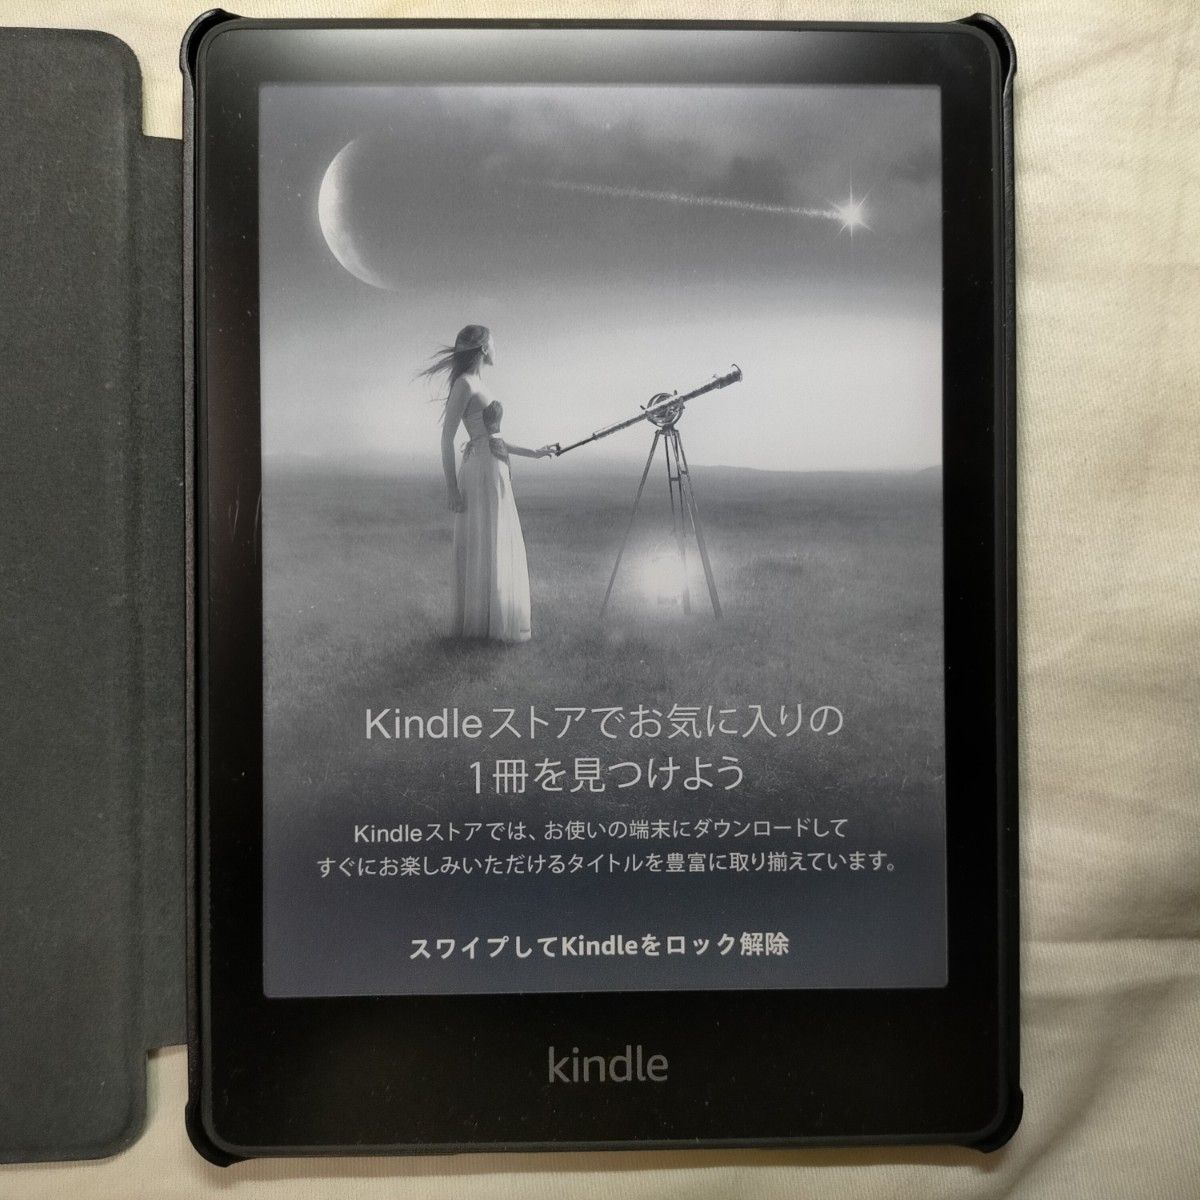 Kindle(16GB) 11世代 広告あり-